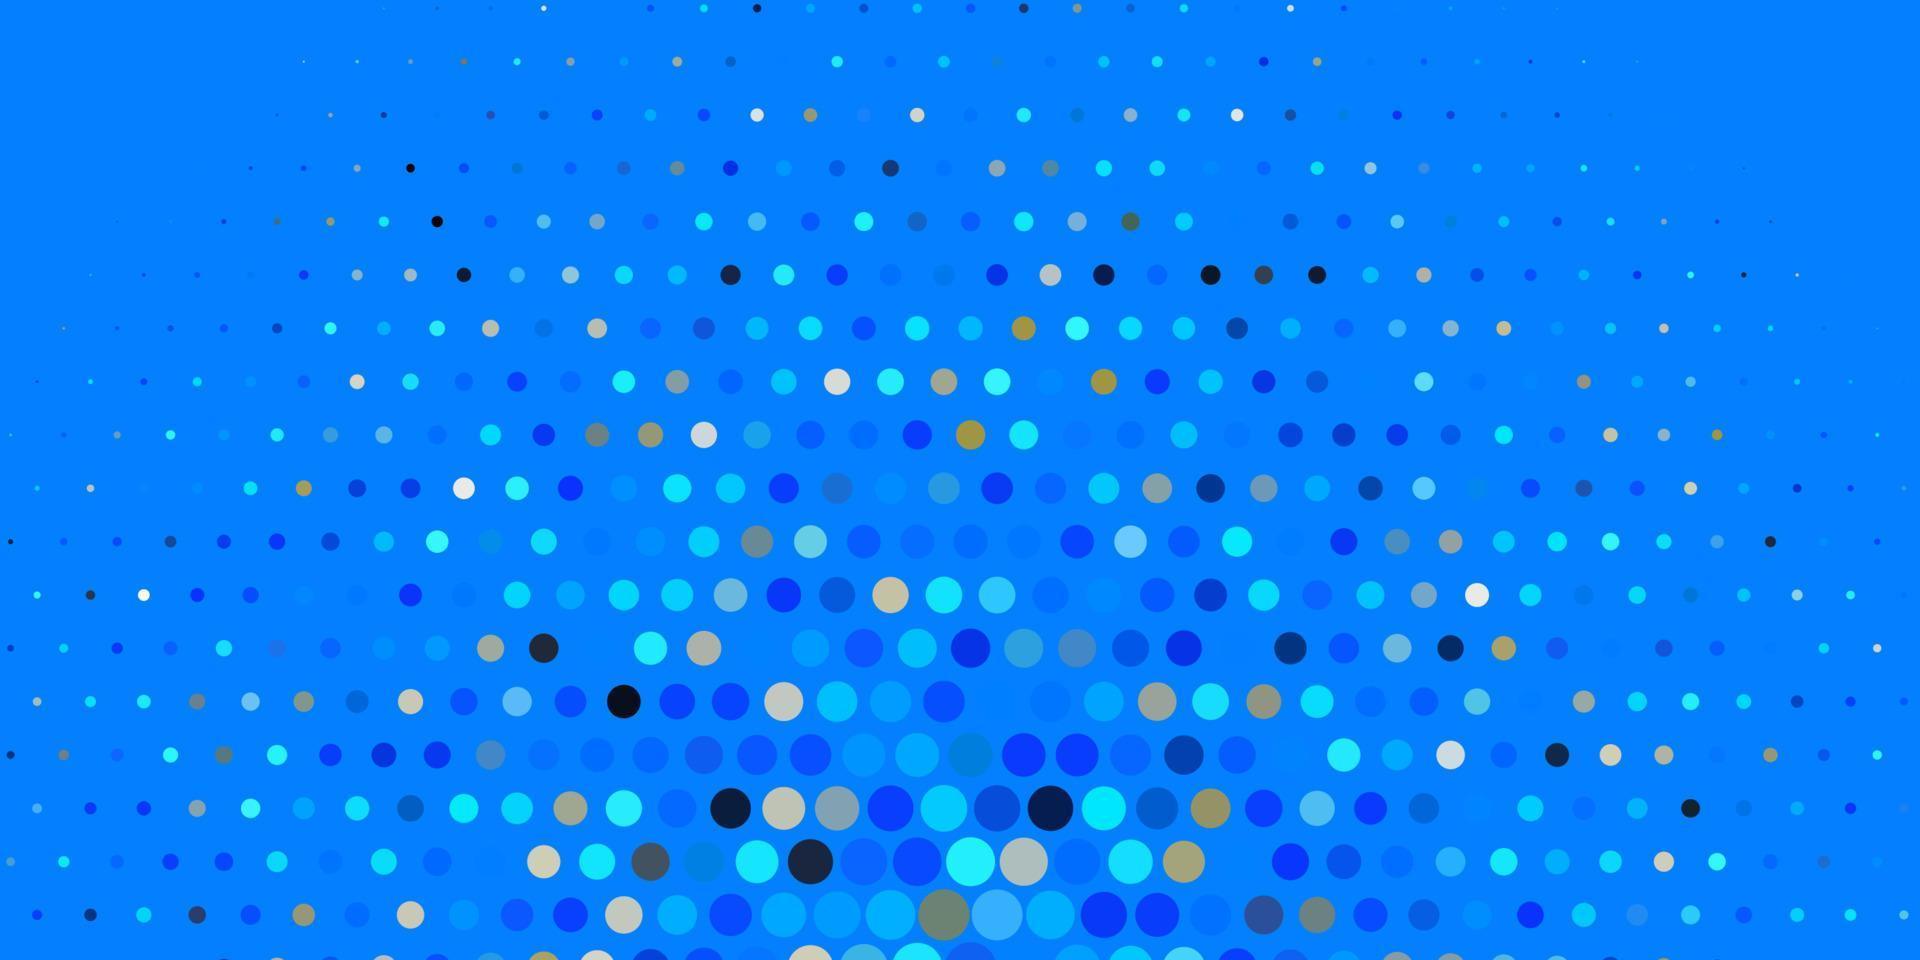 modèle vectoriel bleu foncé avec des cercles.